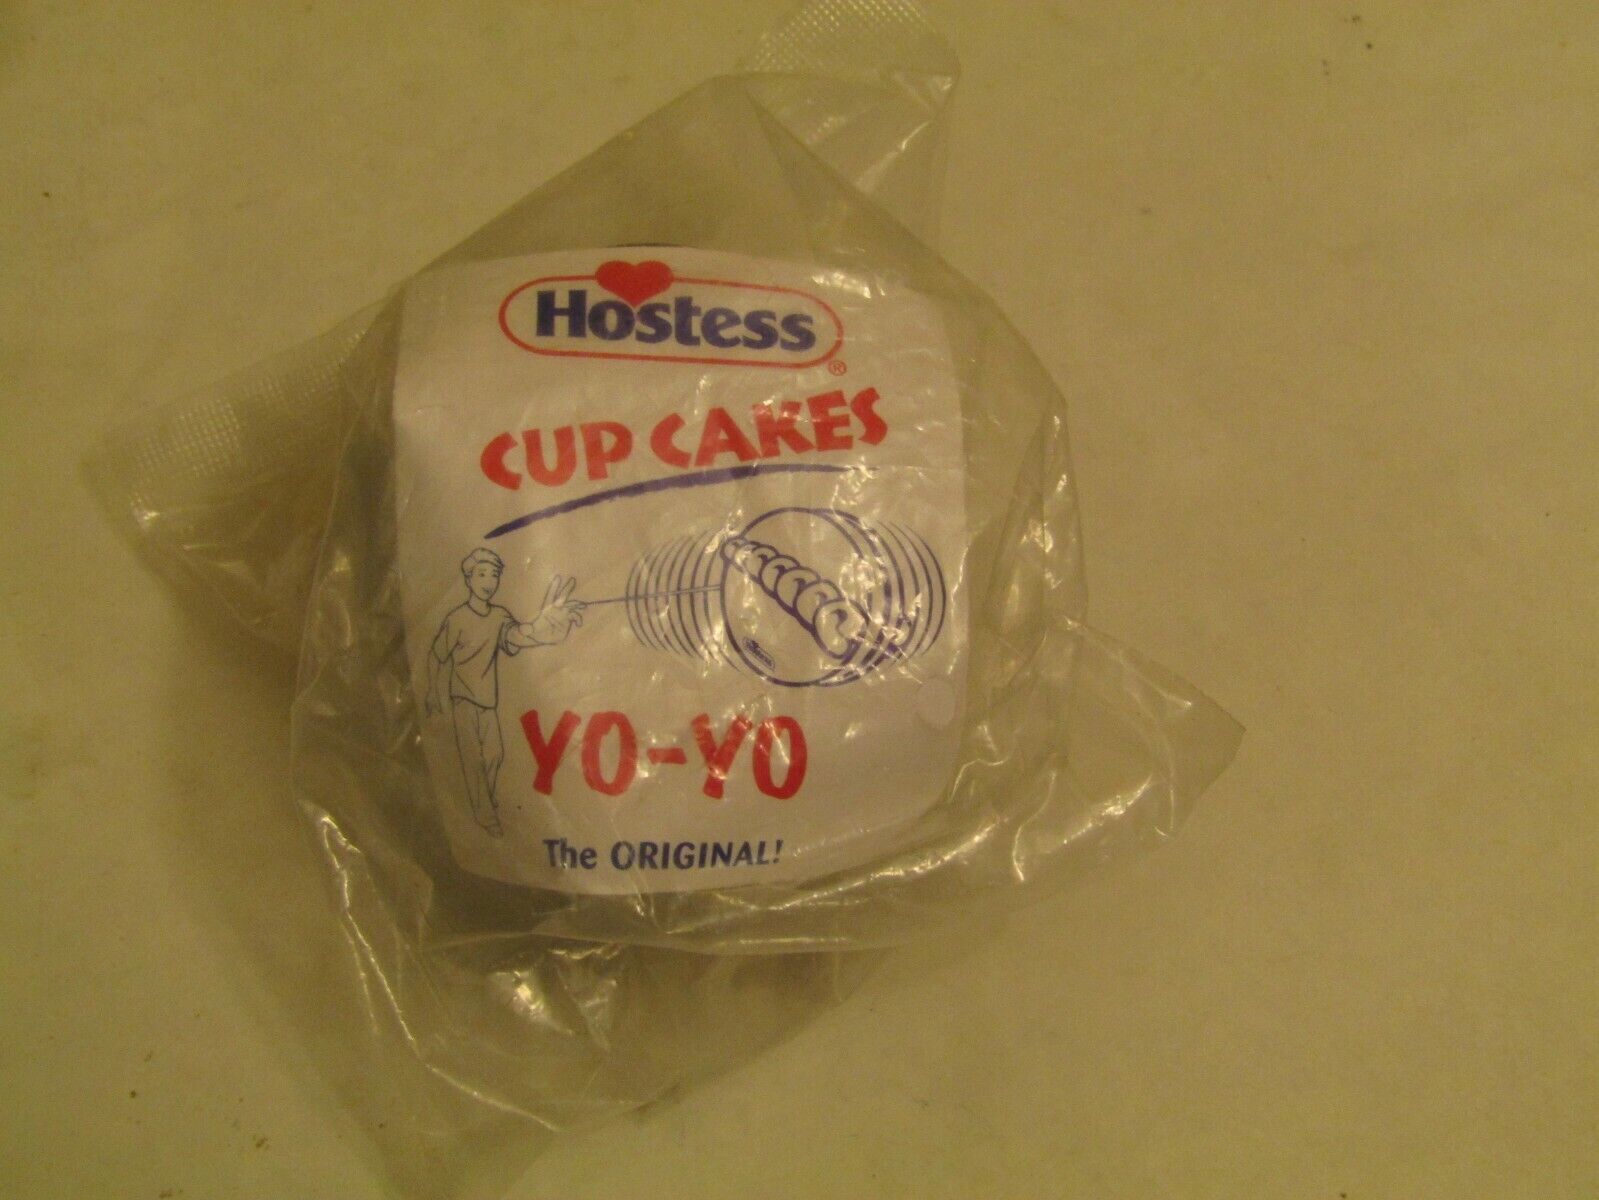 Hostess Cup Cakes Yo-Yo